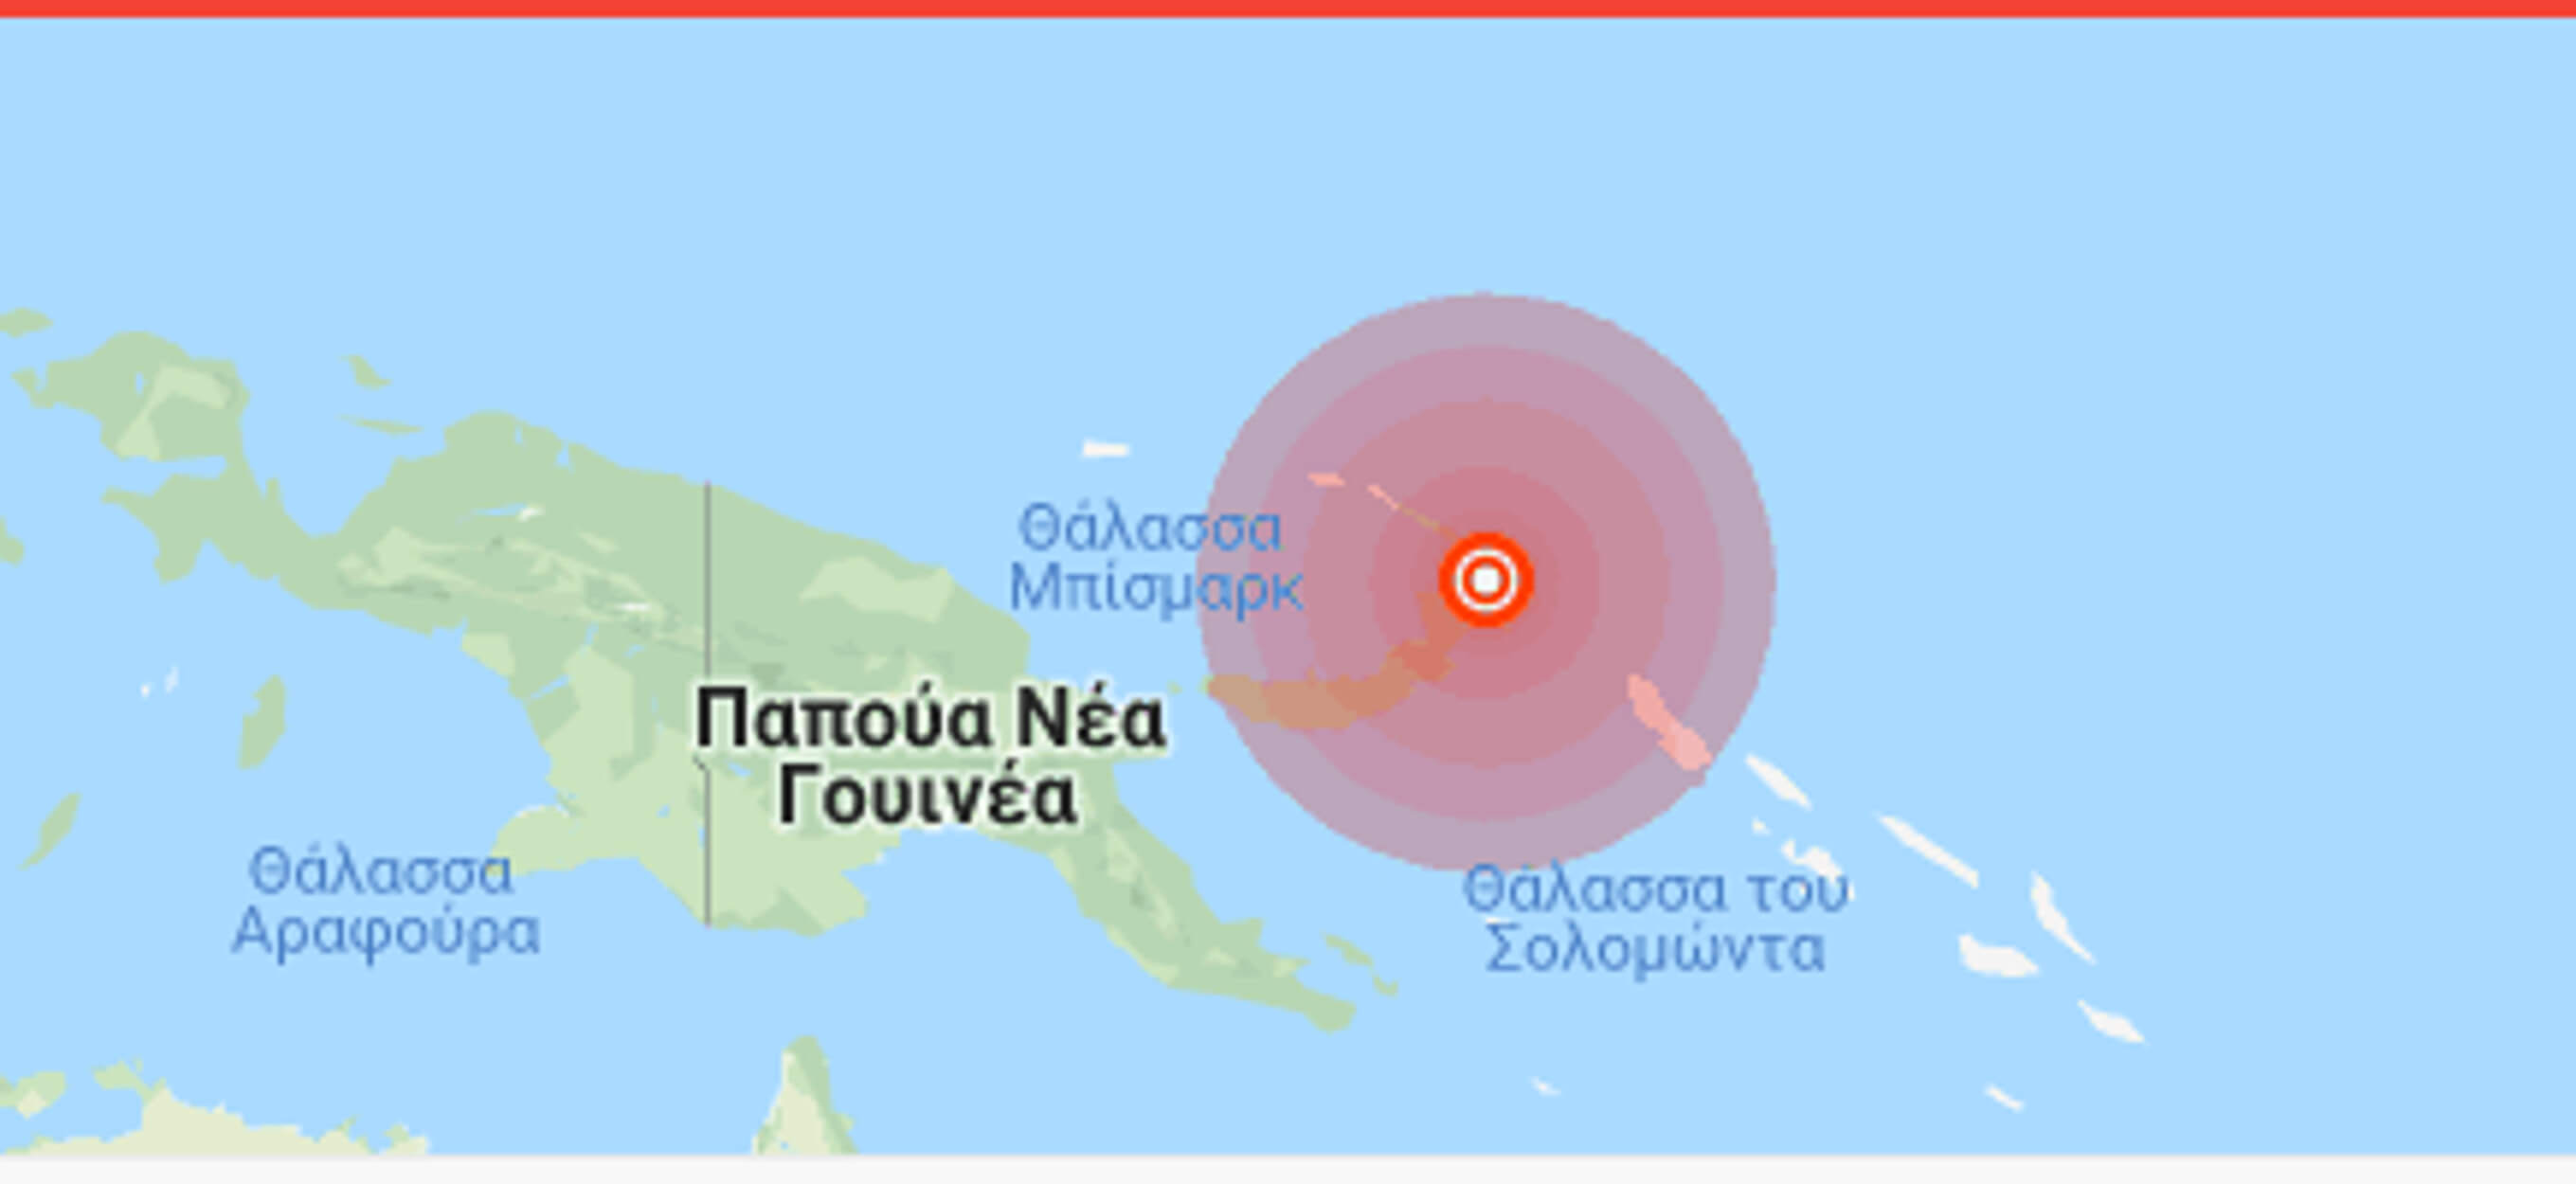 Σεισμός 7,5 Ρίχτερ στην Παπούα Νέα Γουινέα – Προειδοποίηση για τσουνάμι